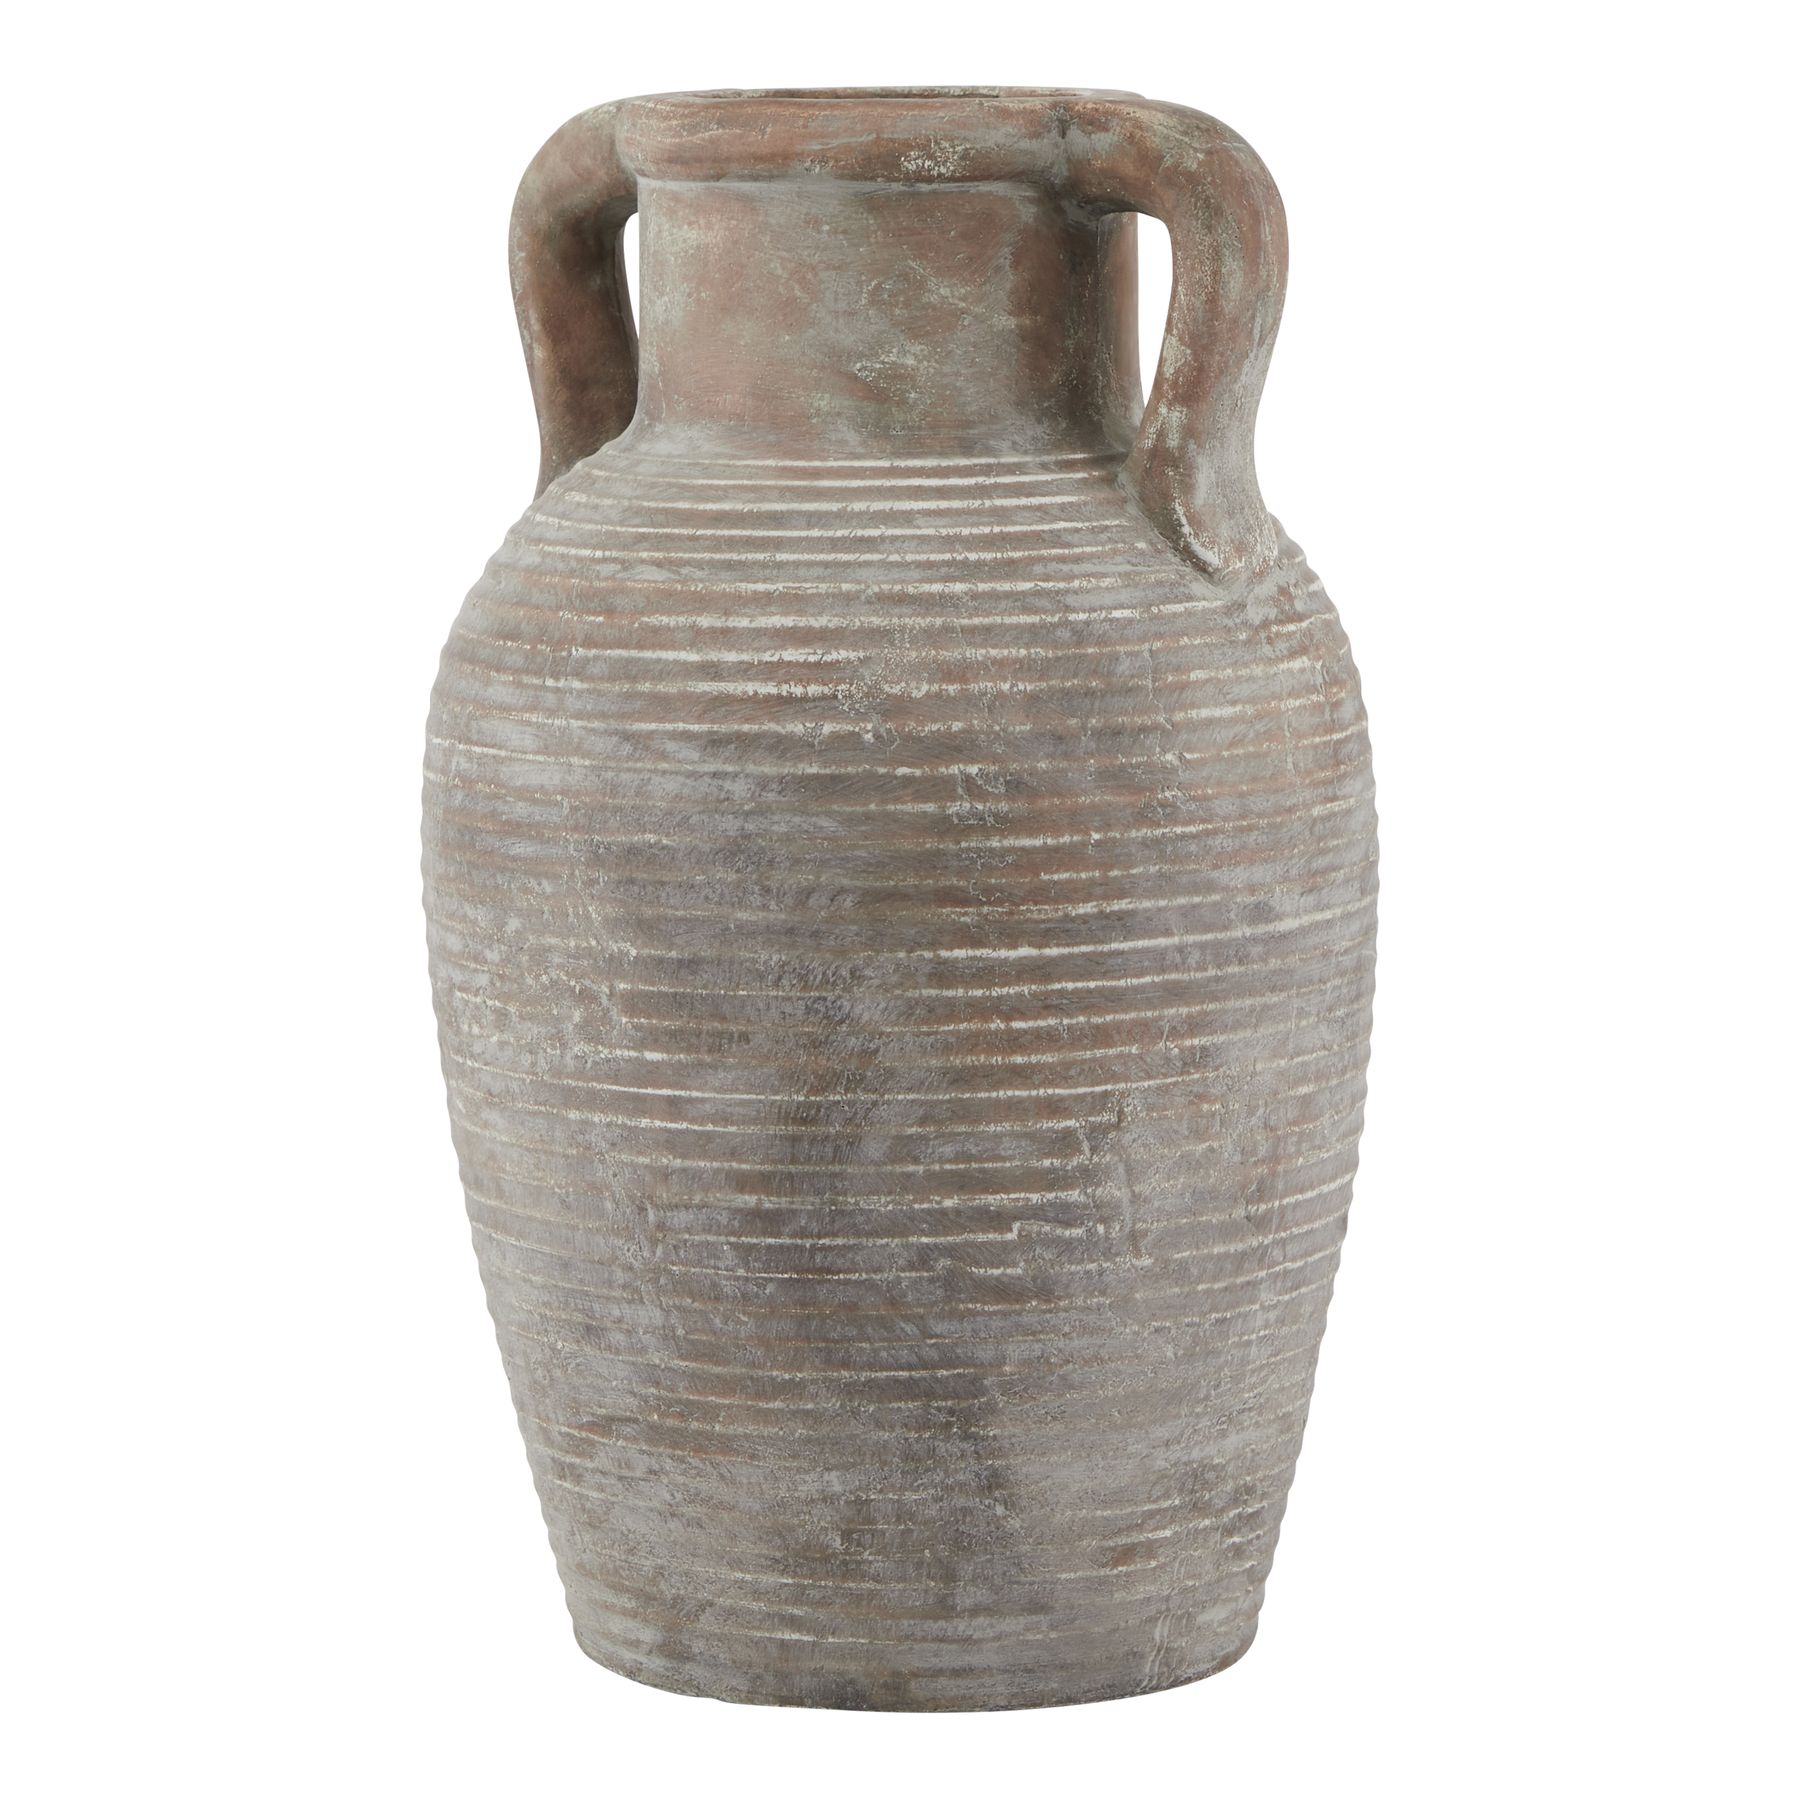 Siena Large Brown Amphora Pot - Image 1